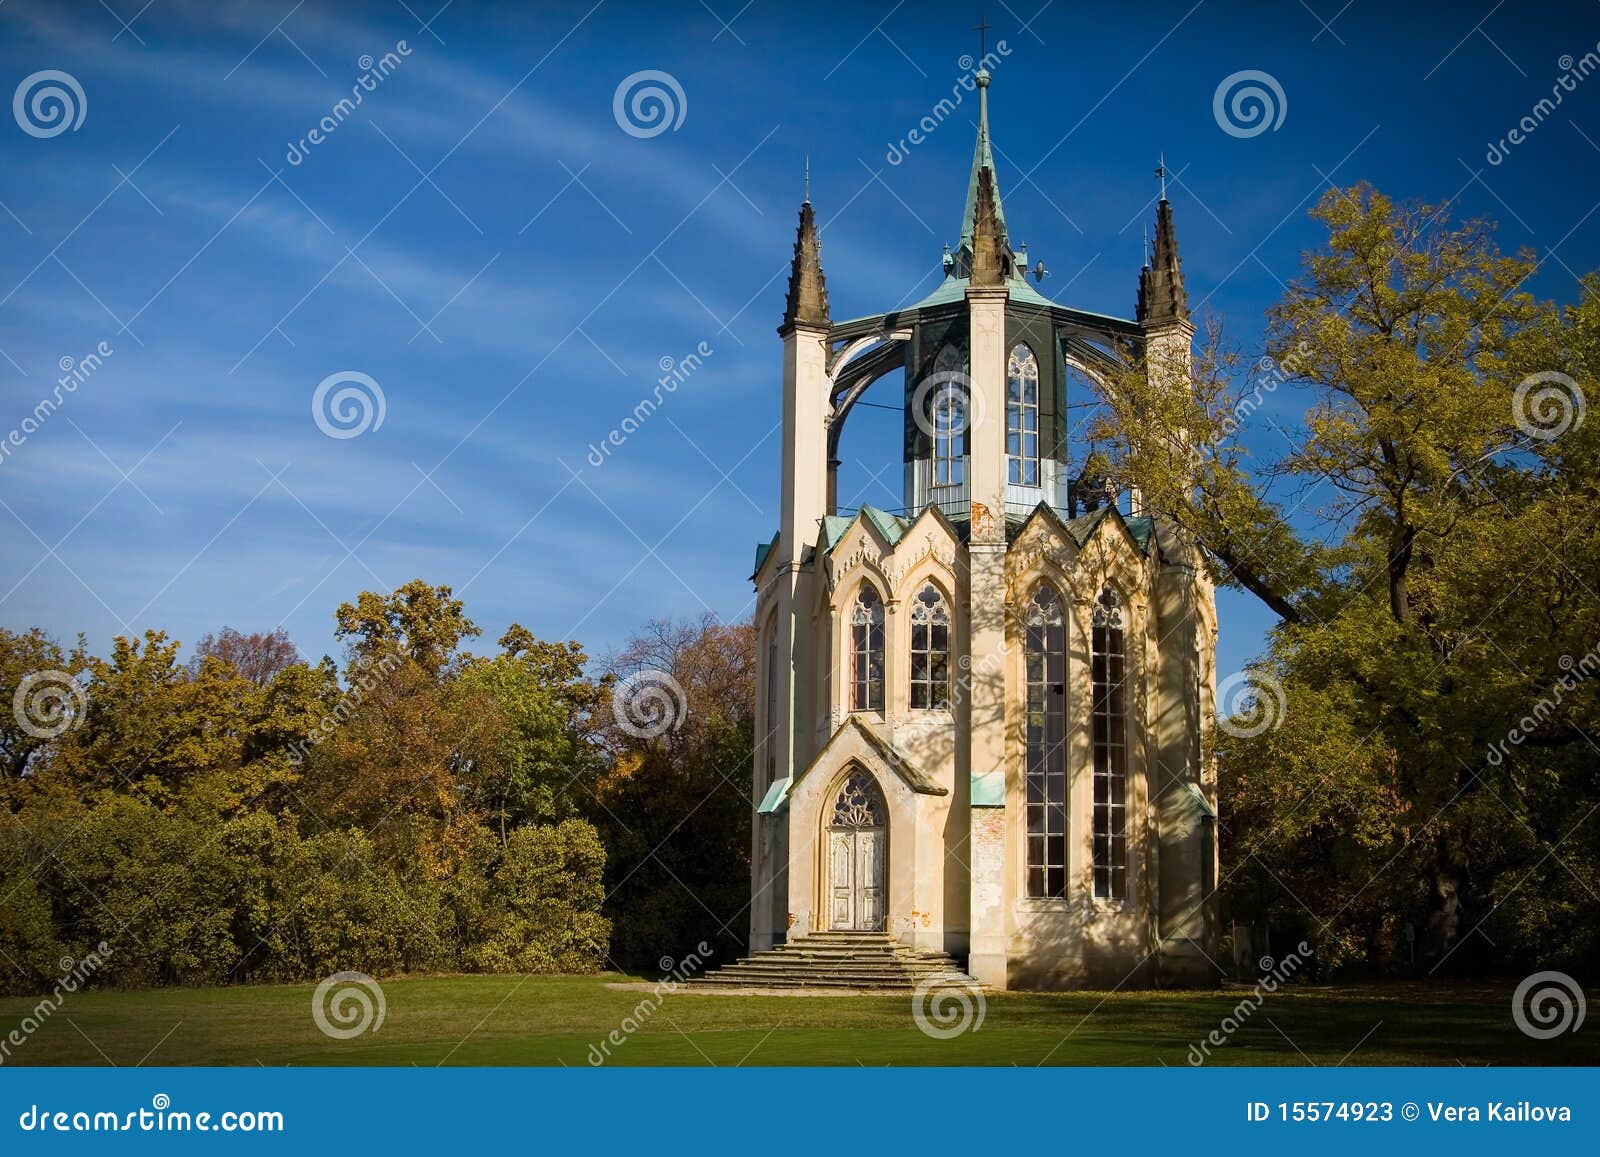 Vooruitzichten-toren in Gotische Heropleving. Mooie neogotische vooruitzichten-toren in chateautuin - Krasny dvur - Tsjechische Republiek